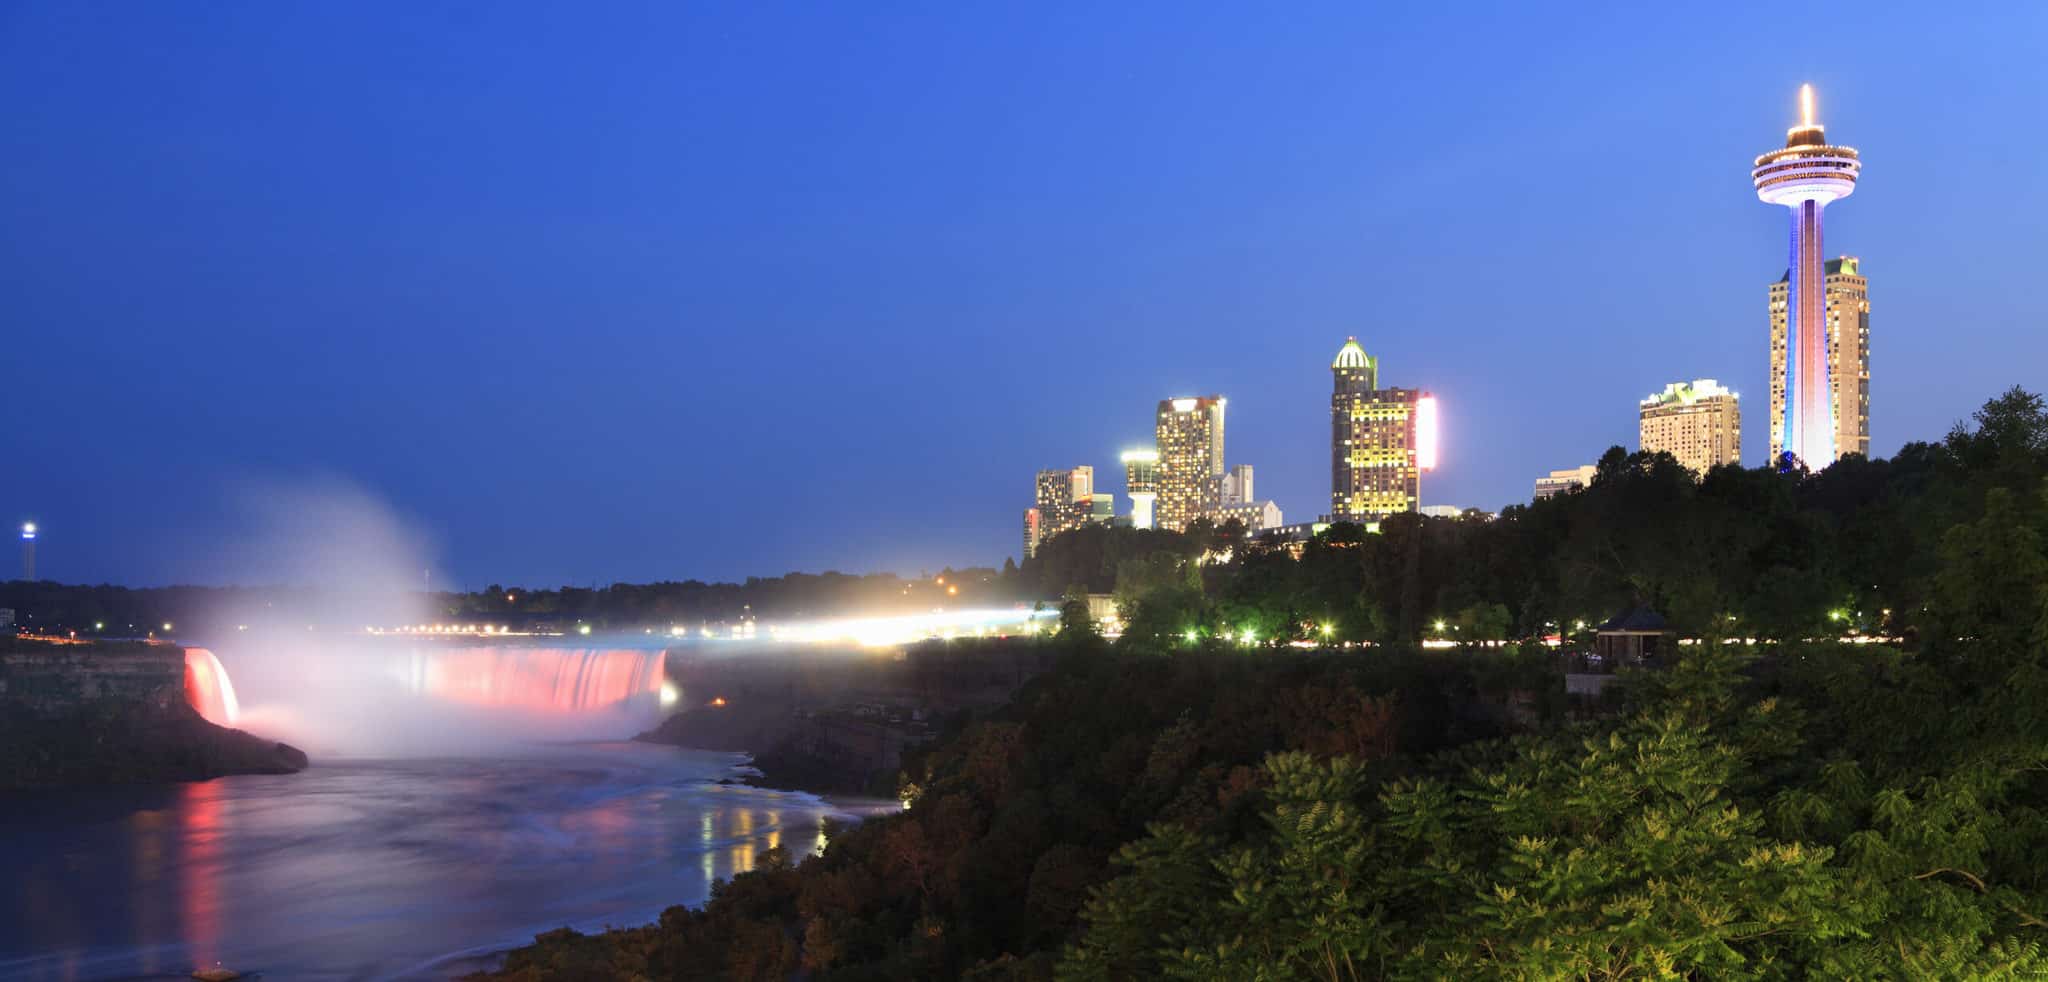 Niagara Falls at night from the north